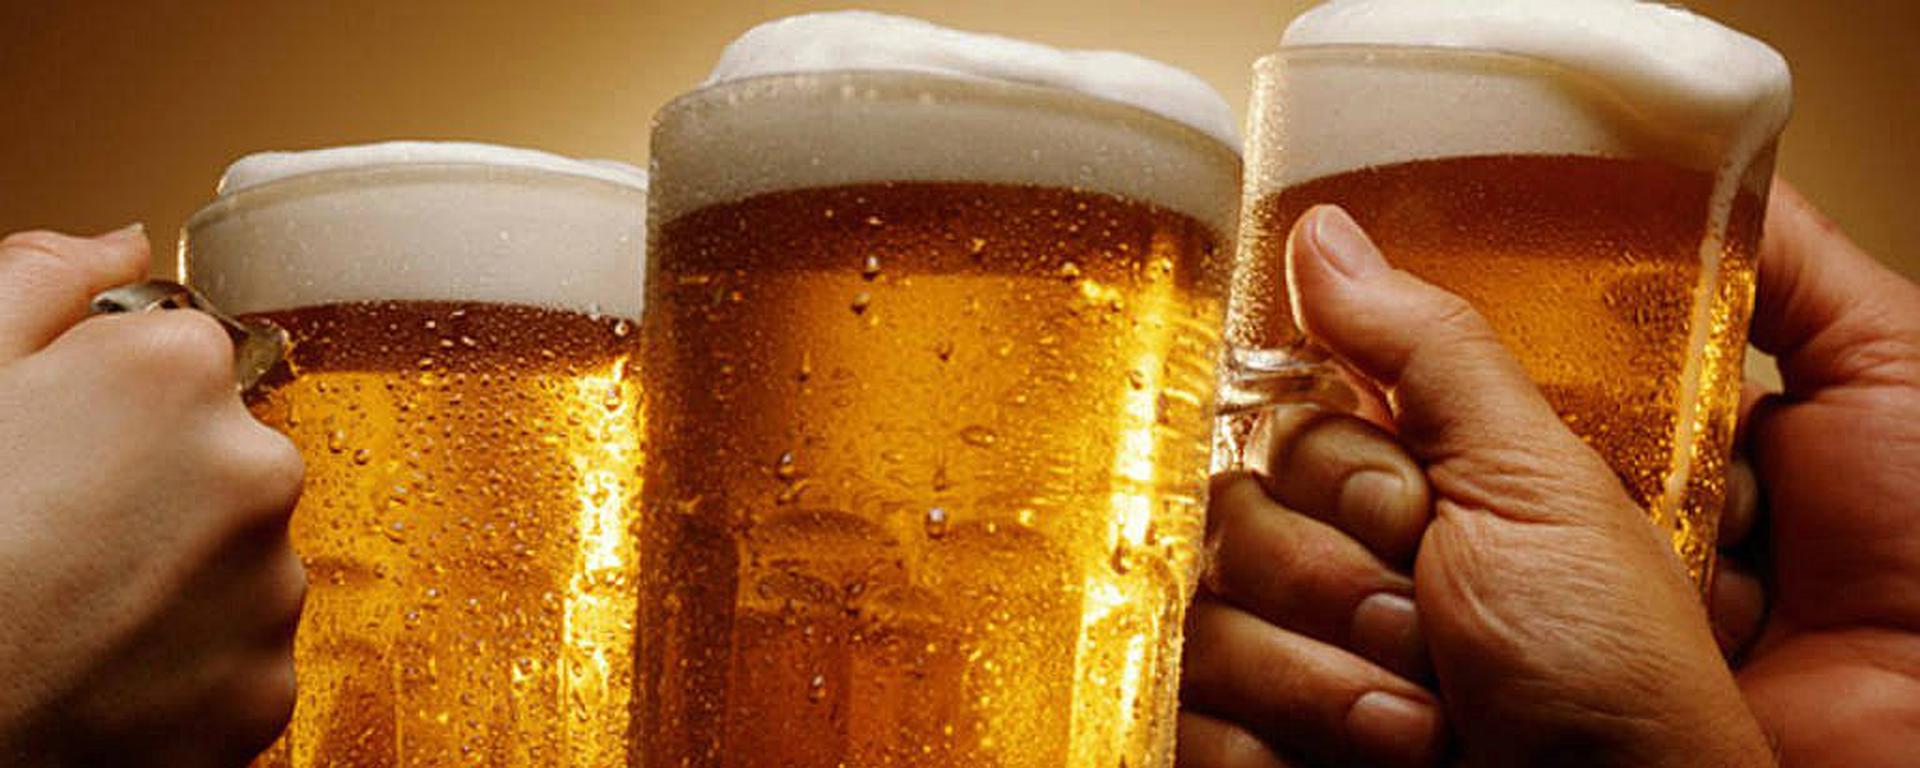 Cervezas: ¿cuánto las prefieren los peruanos y cuáles son las expectativas de consumo este verano?